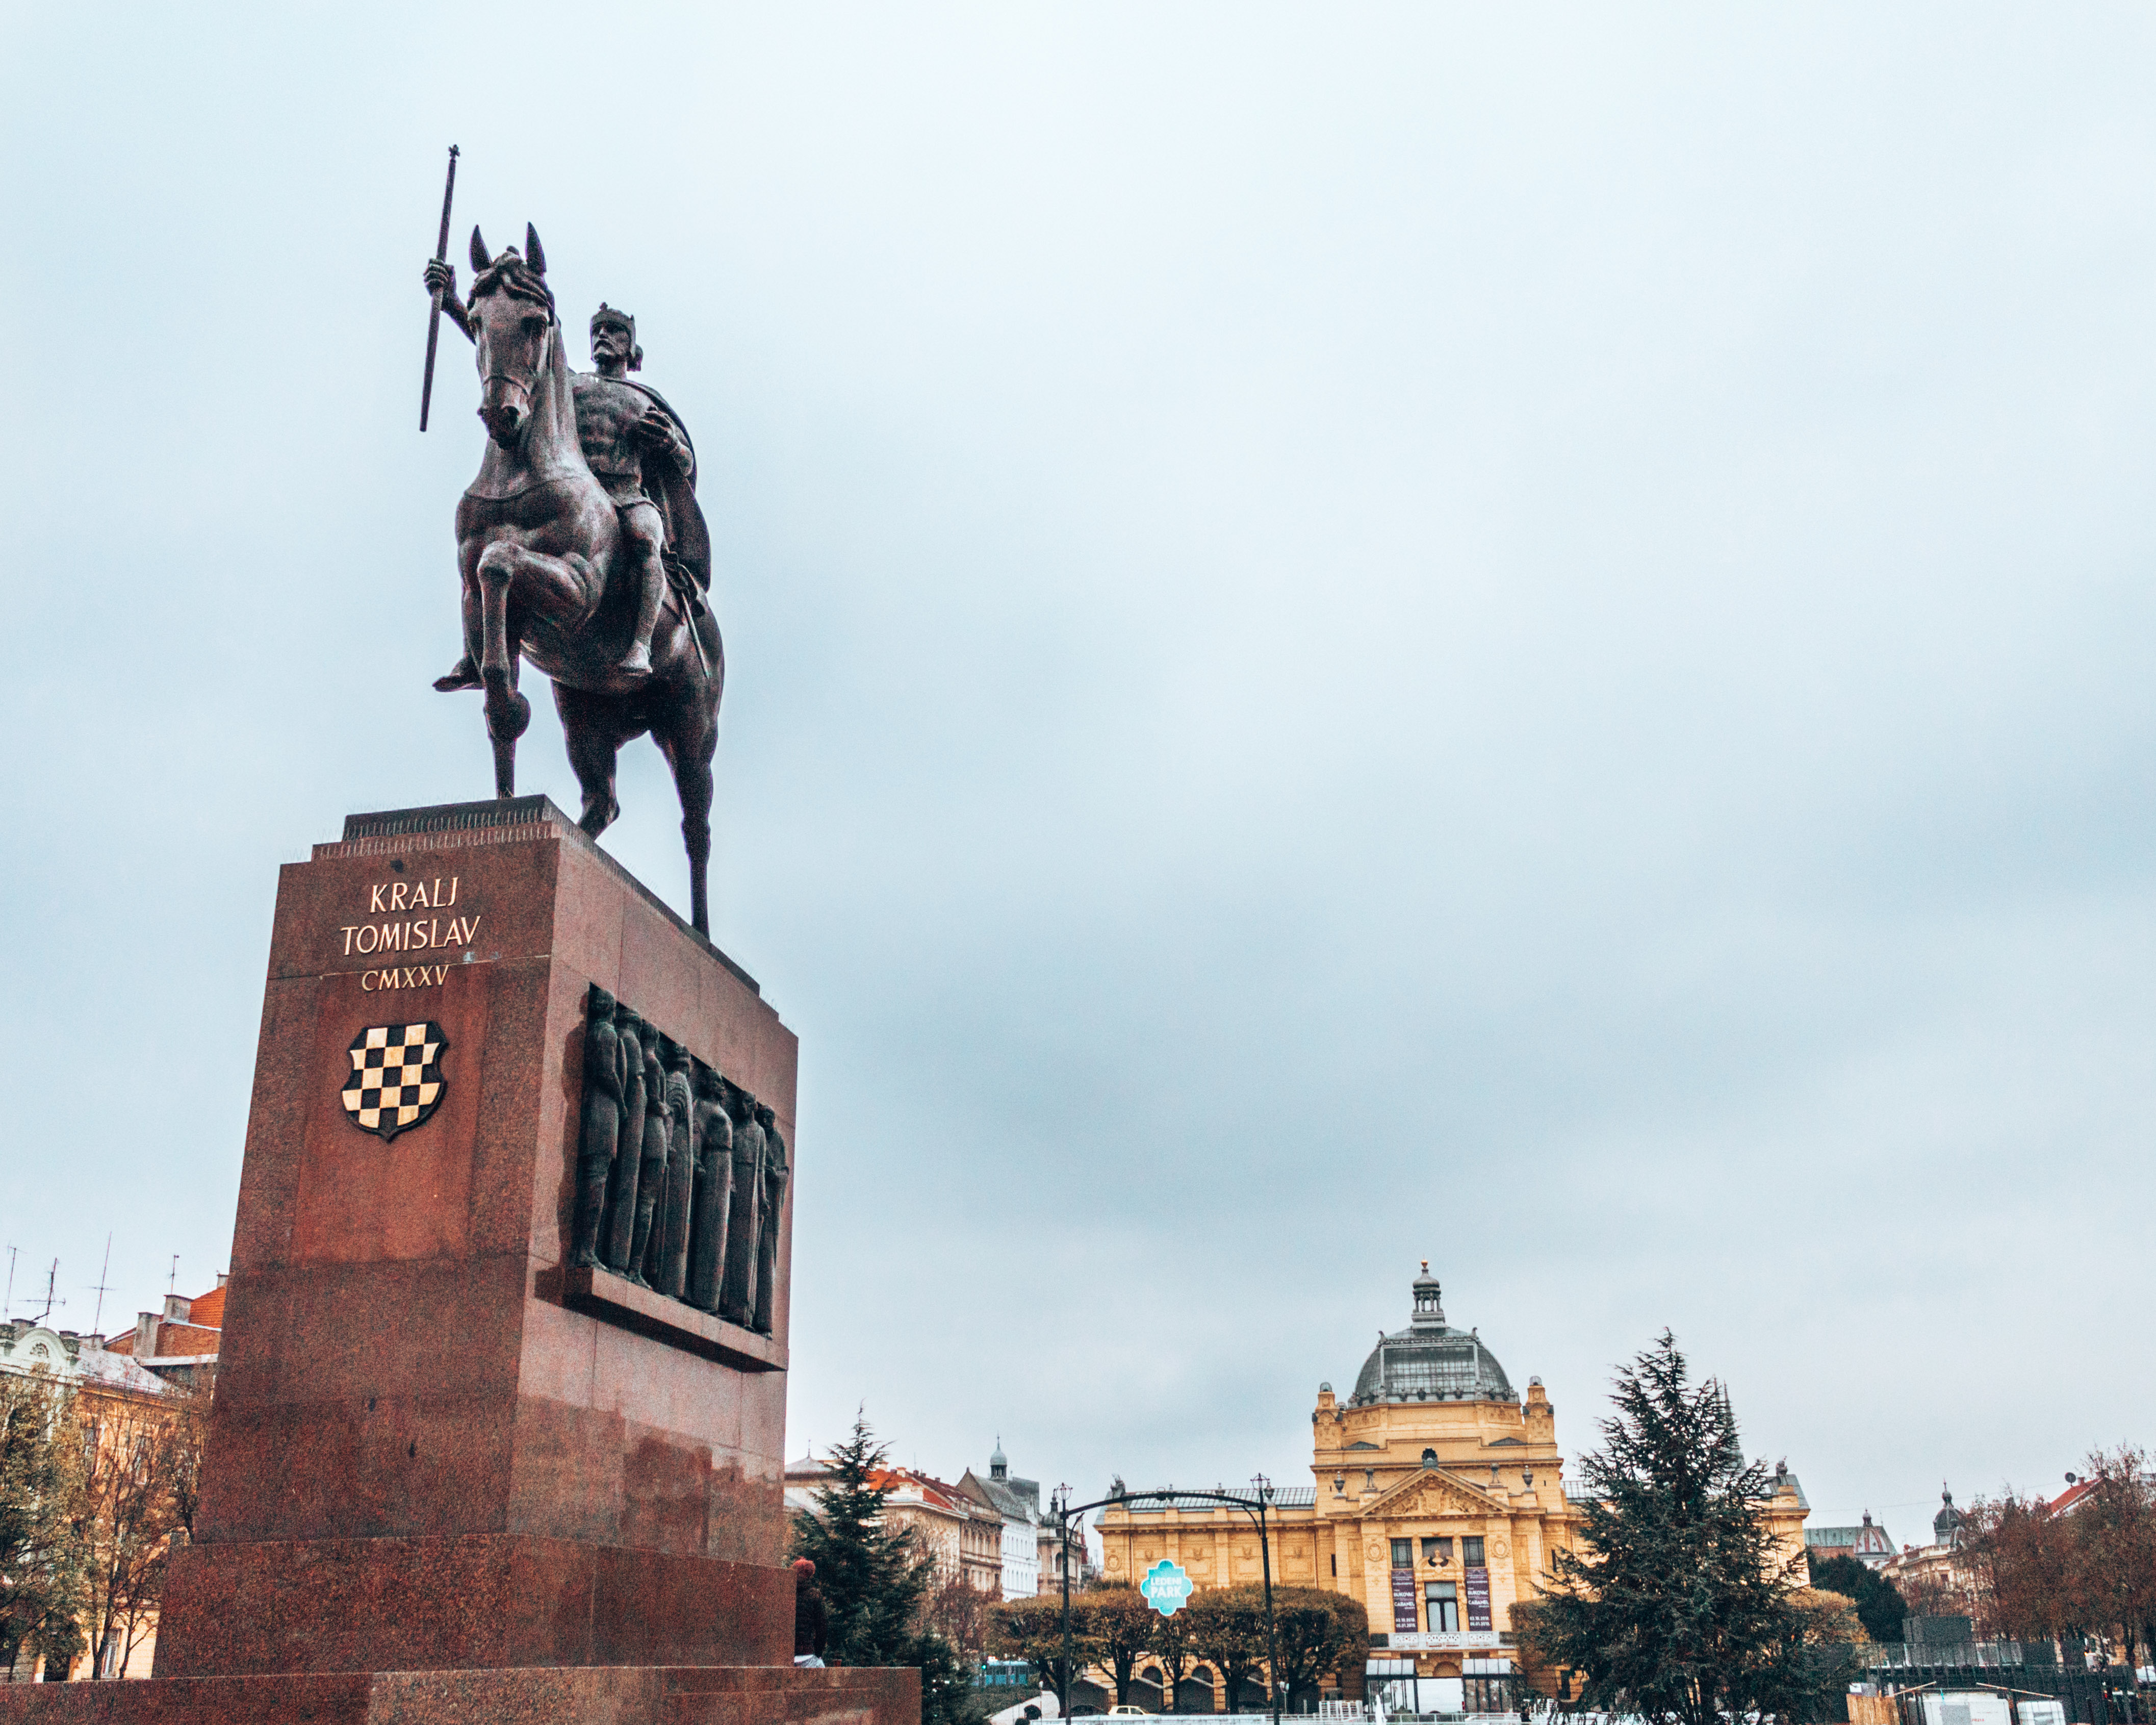 The statue of King Tomislav in Zagreb, Croatia